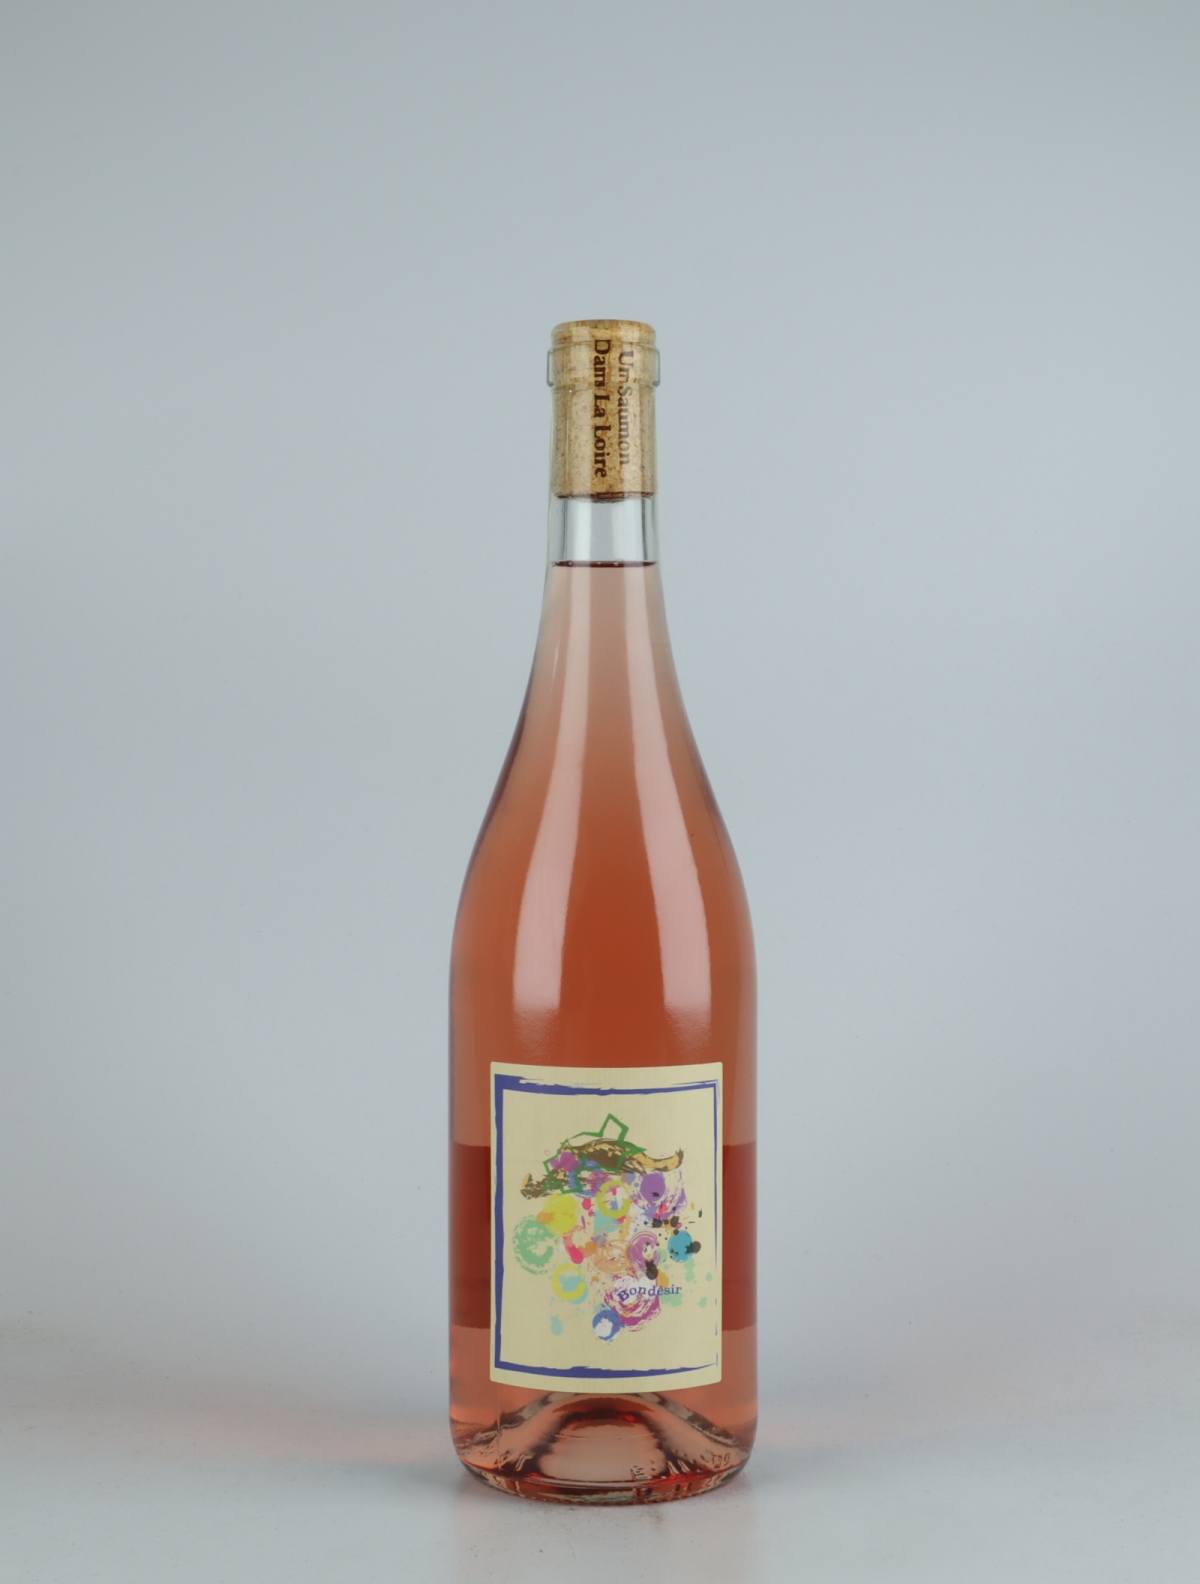 A bottle 2021 Bondésir - Rosé - Vin de Frantz Rosé from Frantz Saumon, Loire in France